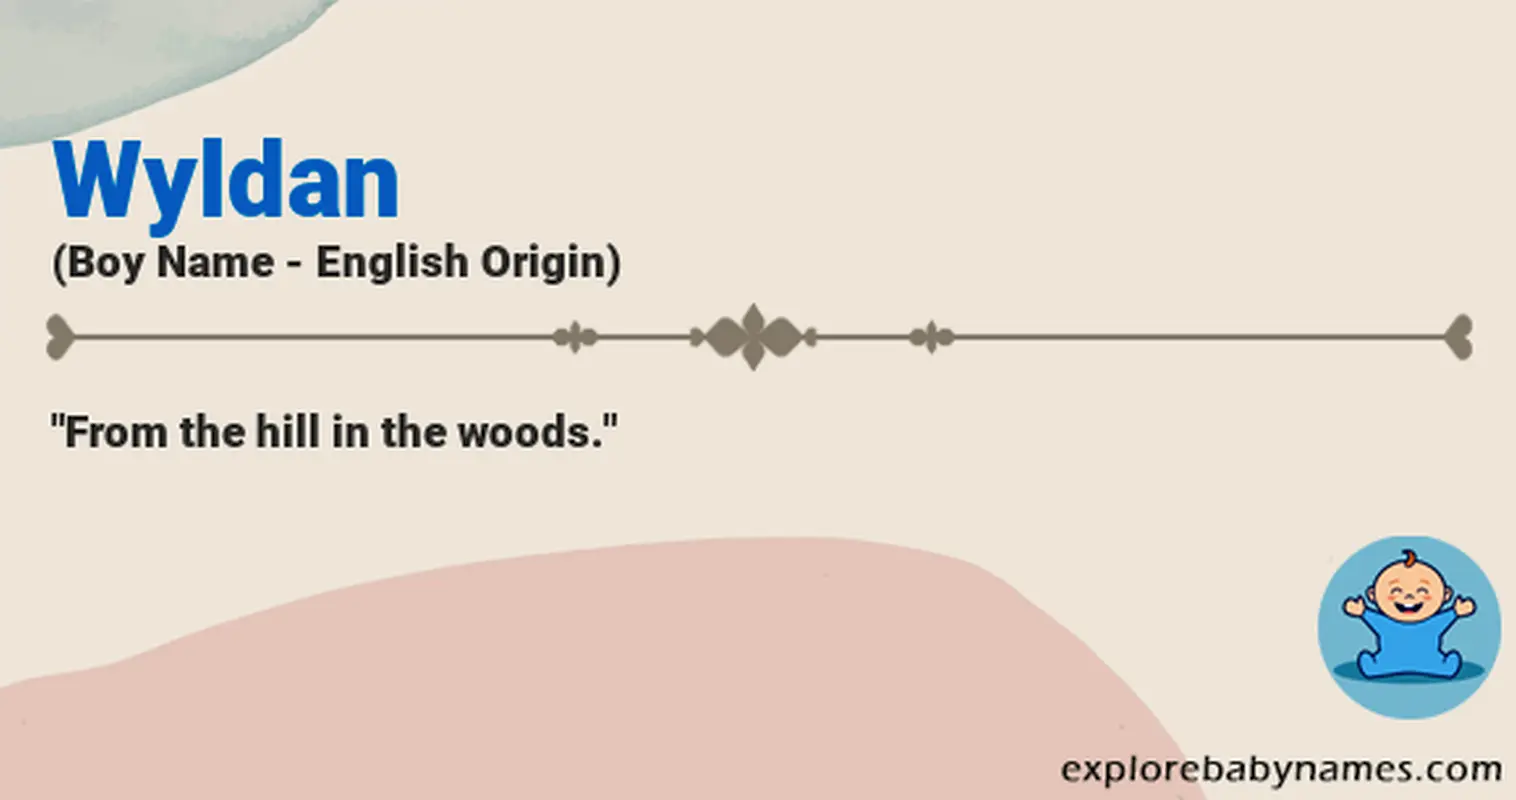 Meaning of Wyldan